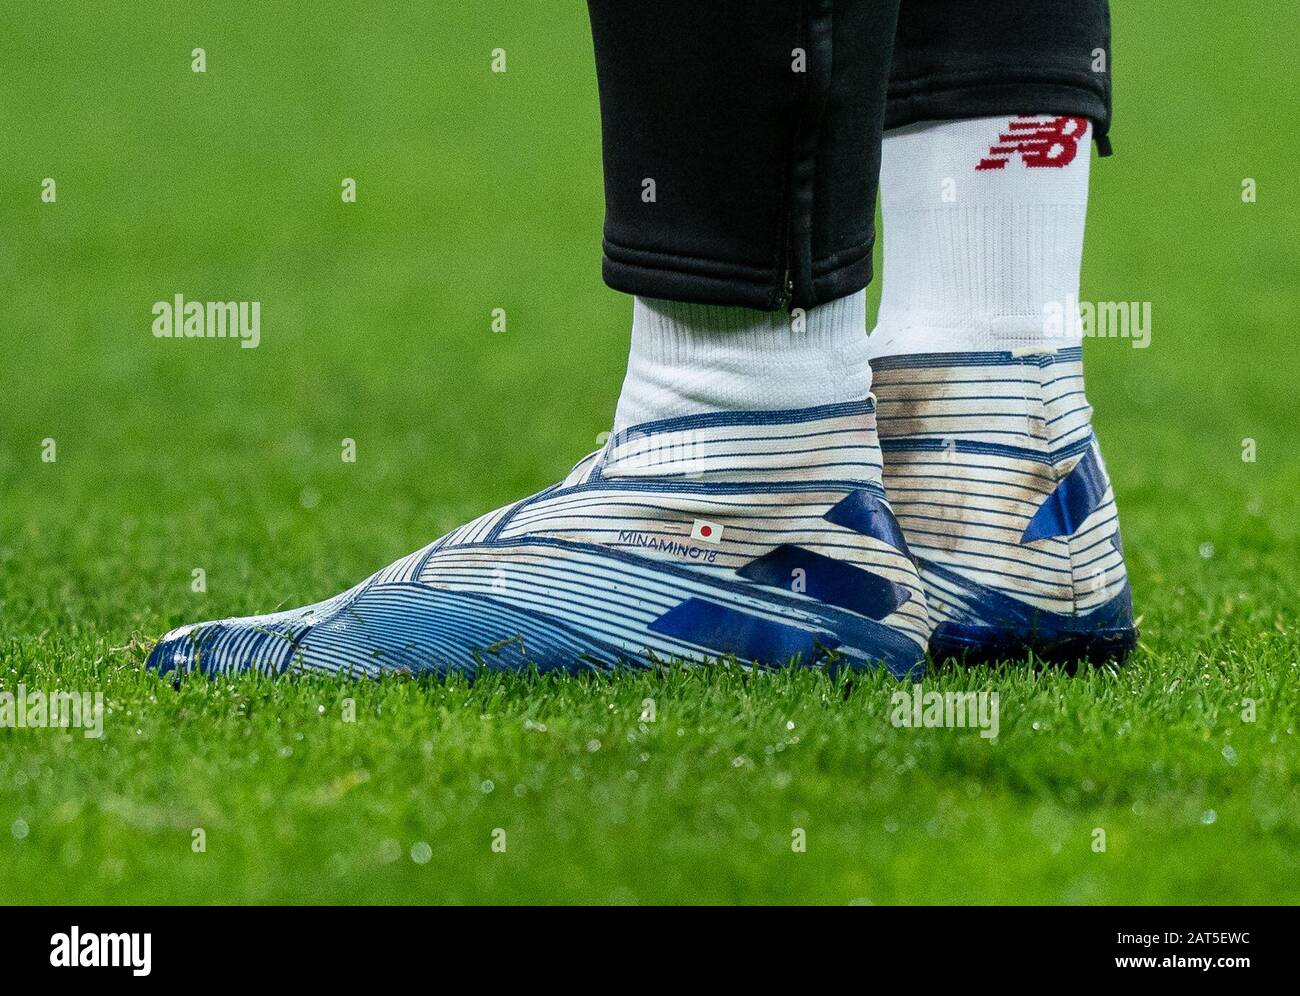 Las botas de fútbol Adidas Nemesis de Takumi Minamino de Liverpool  mostrando la bandera de Japón durante el partido de la Premier League entre  West Ham United y Liverpool en el Olympic